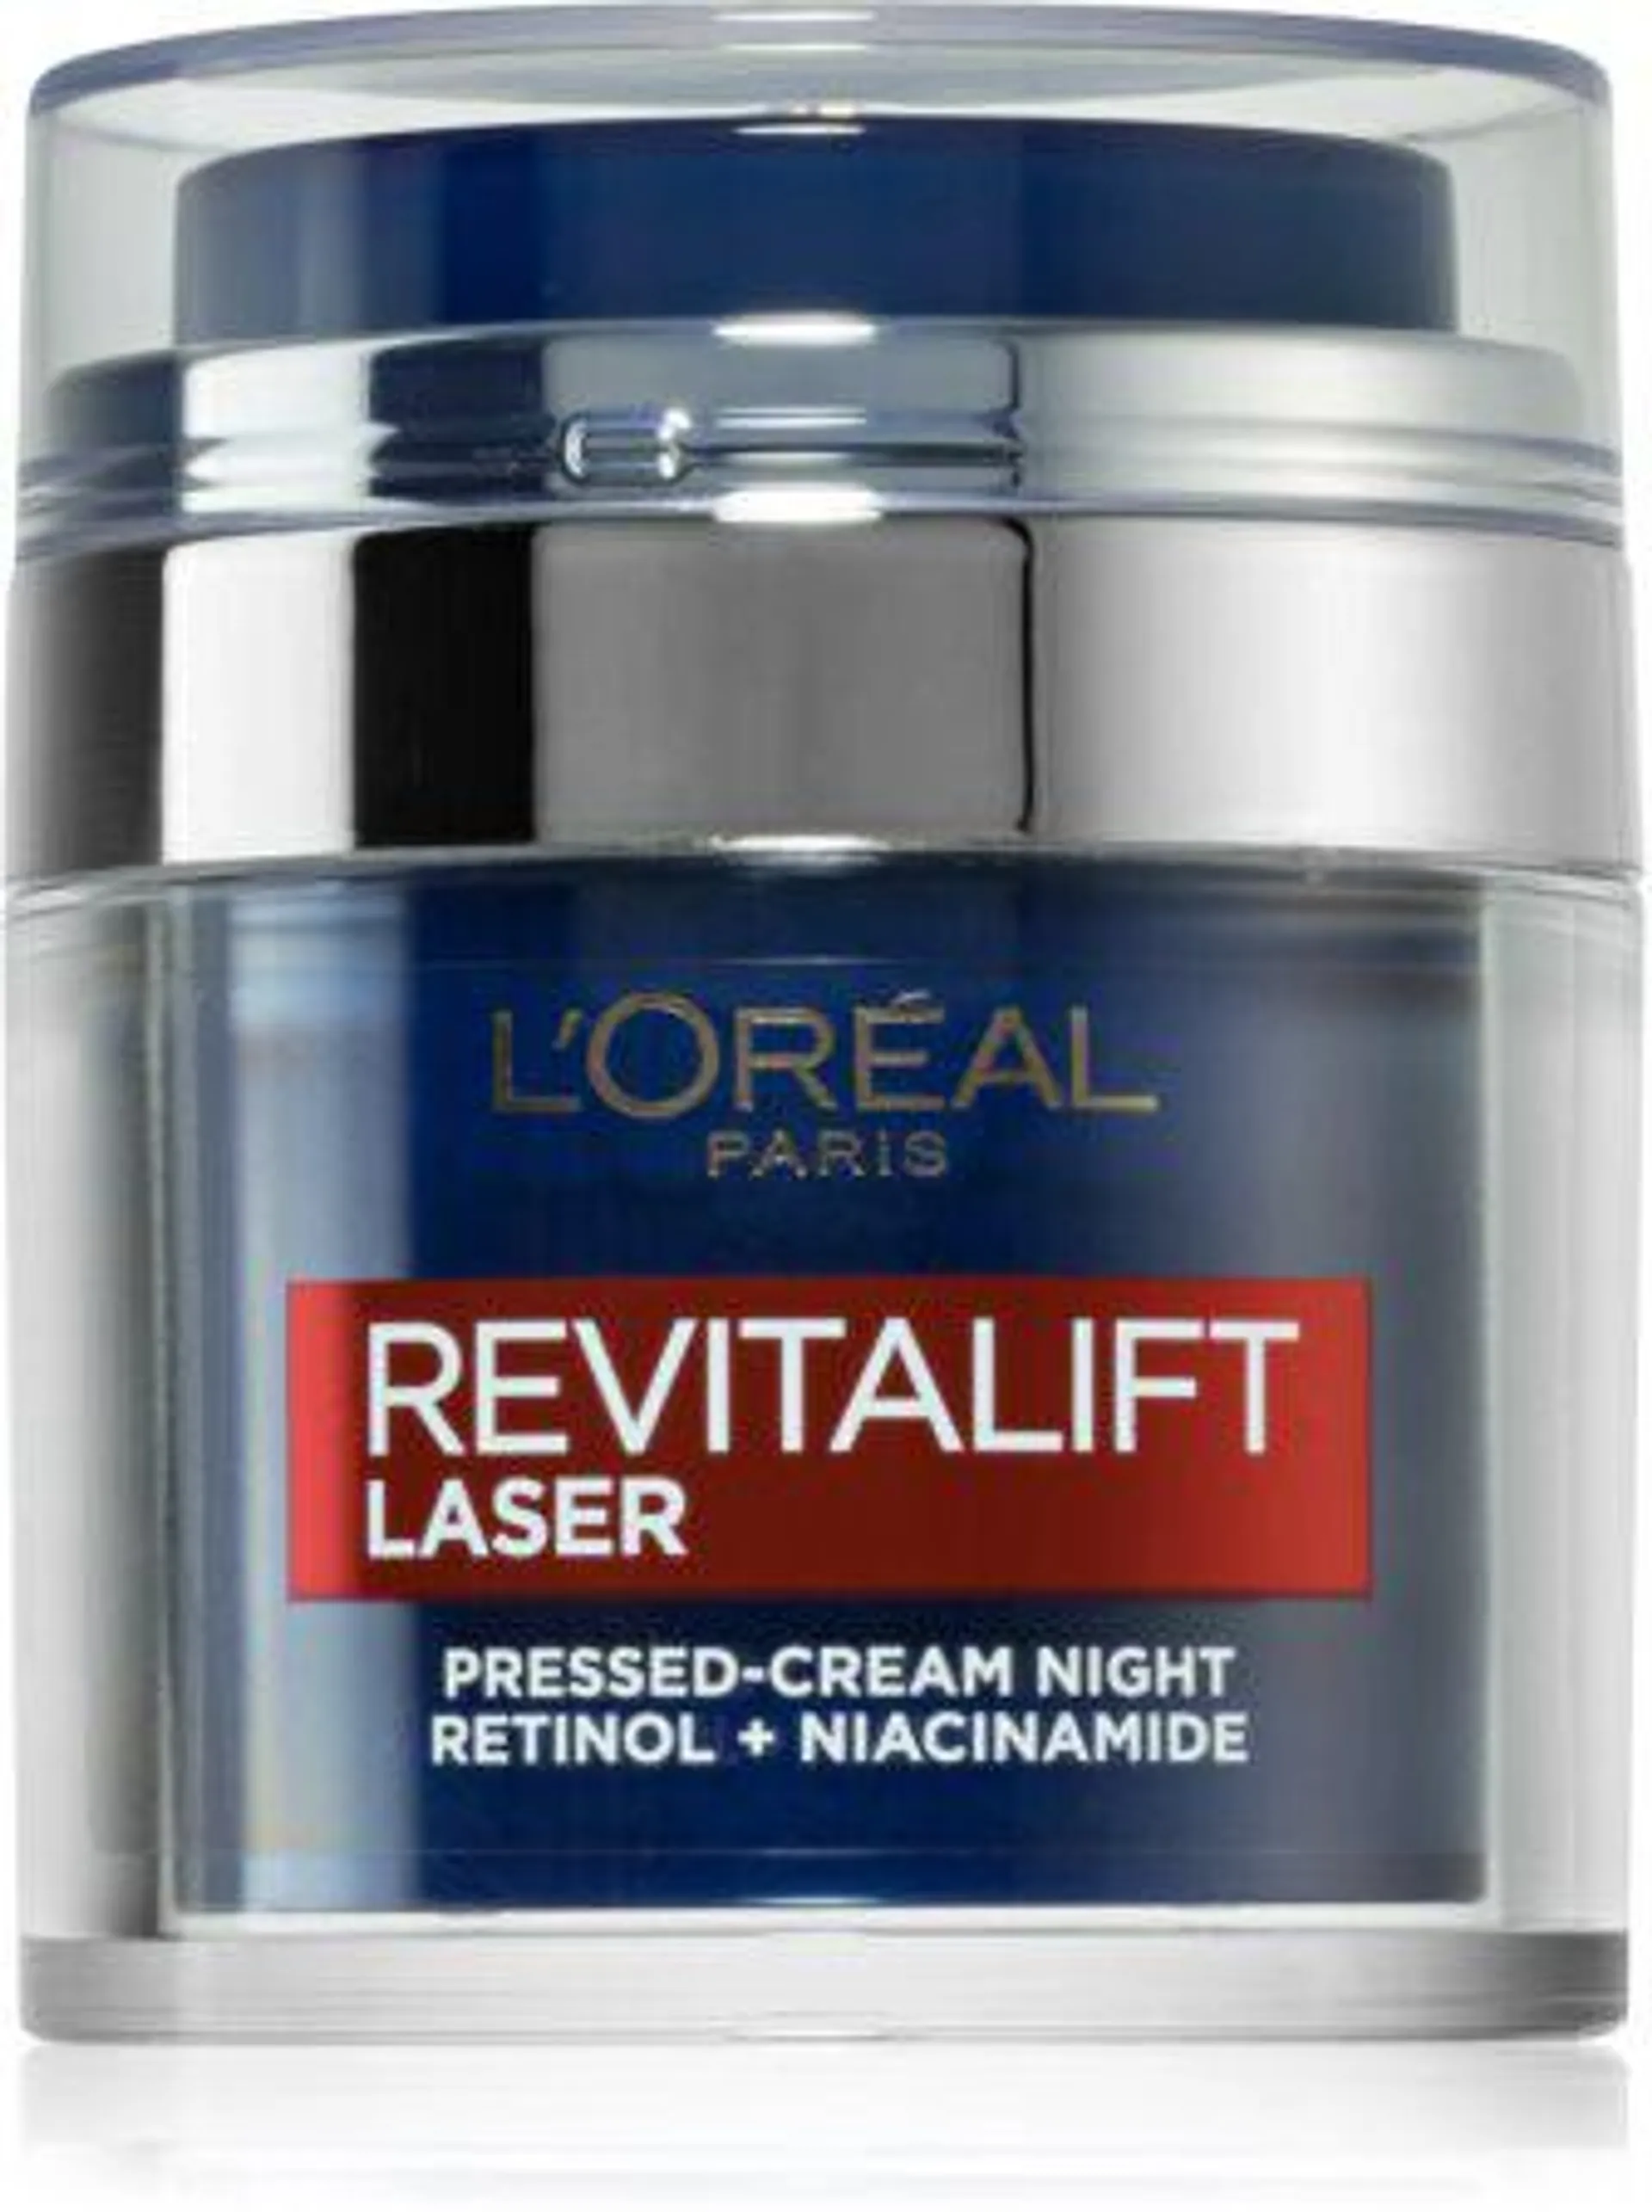 Revitalift Laser Pressed Cream